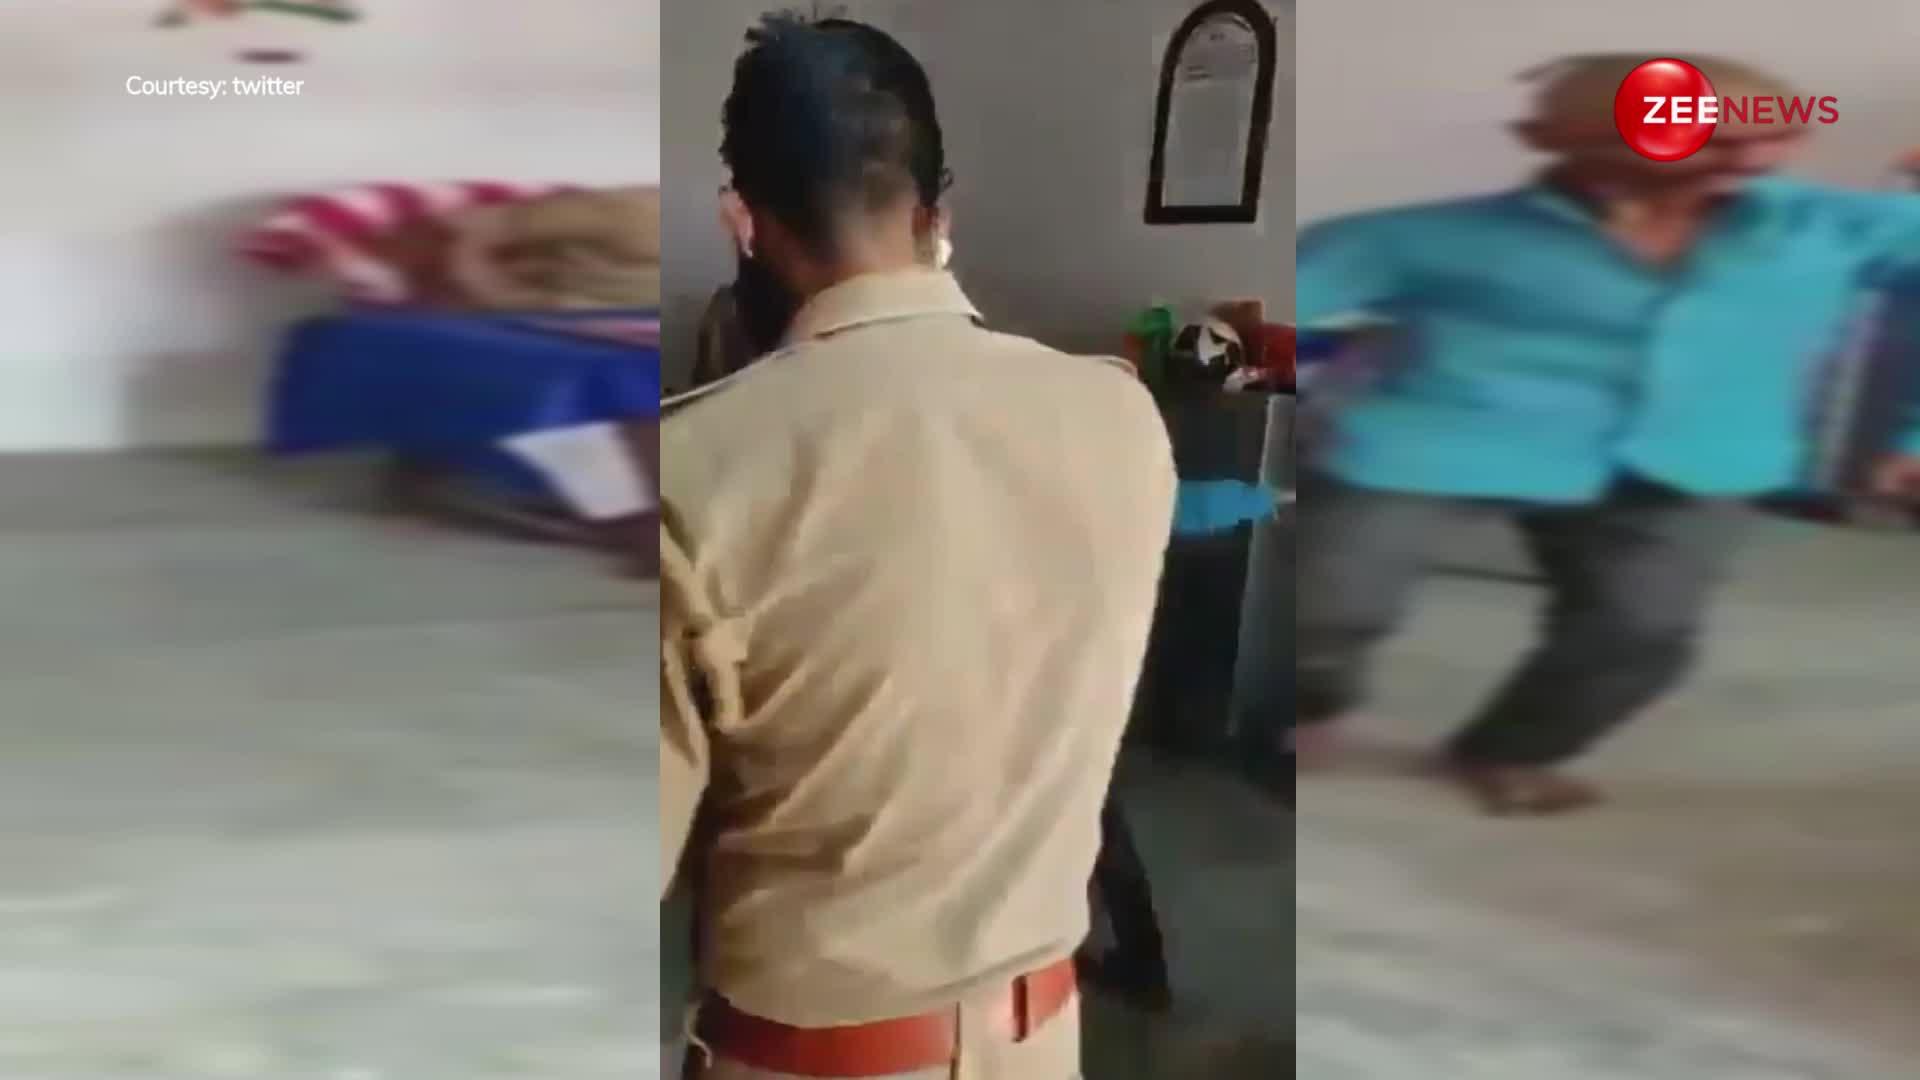 पुलिस स्टेशन में इंस्पेक्टर ने चोर से हरियाणवी गाने पर करवाया धमाकेदार डांस, देख लोट-पोट हुए लोग